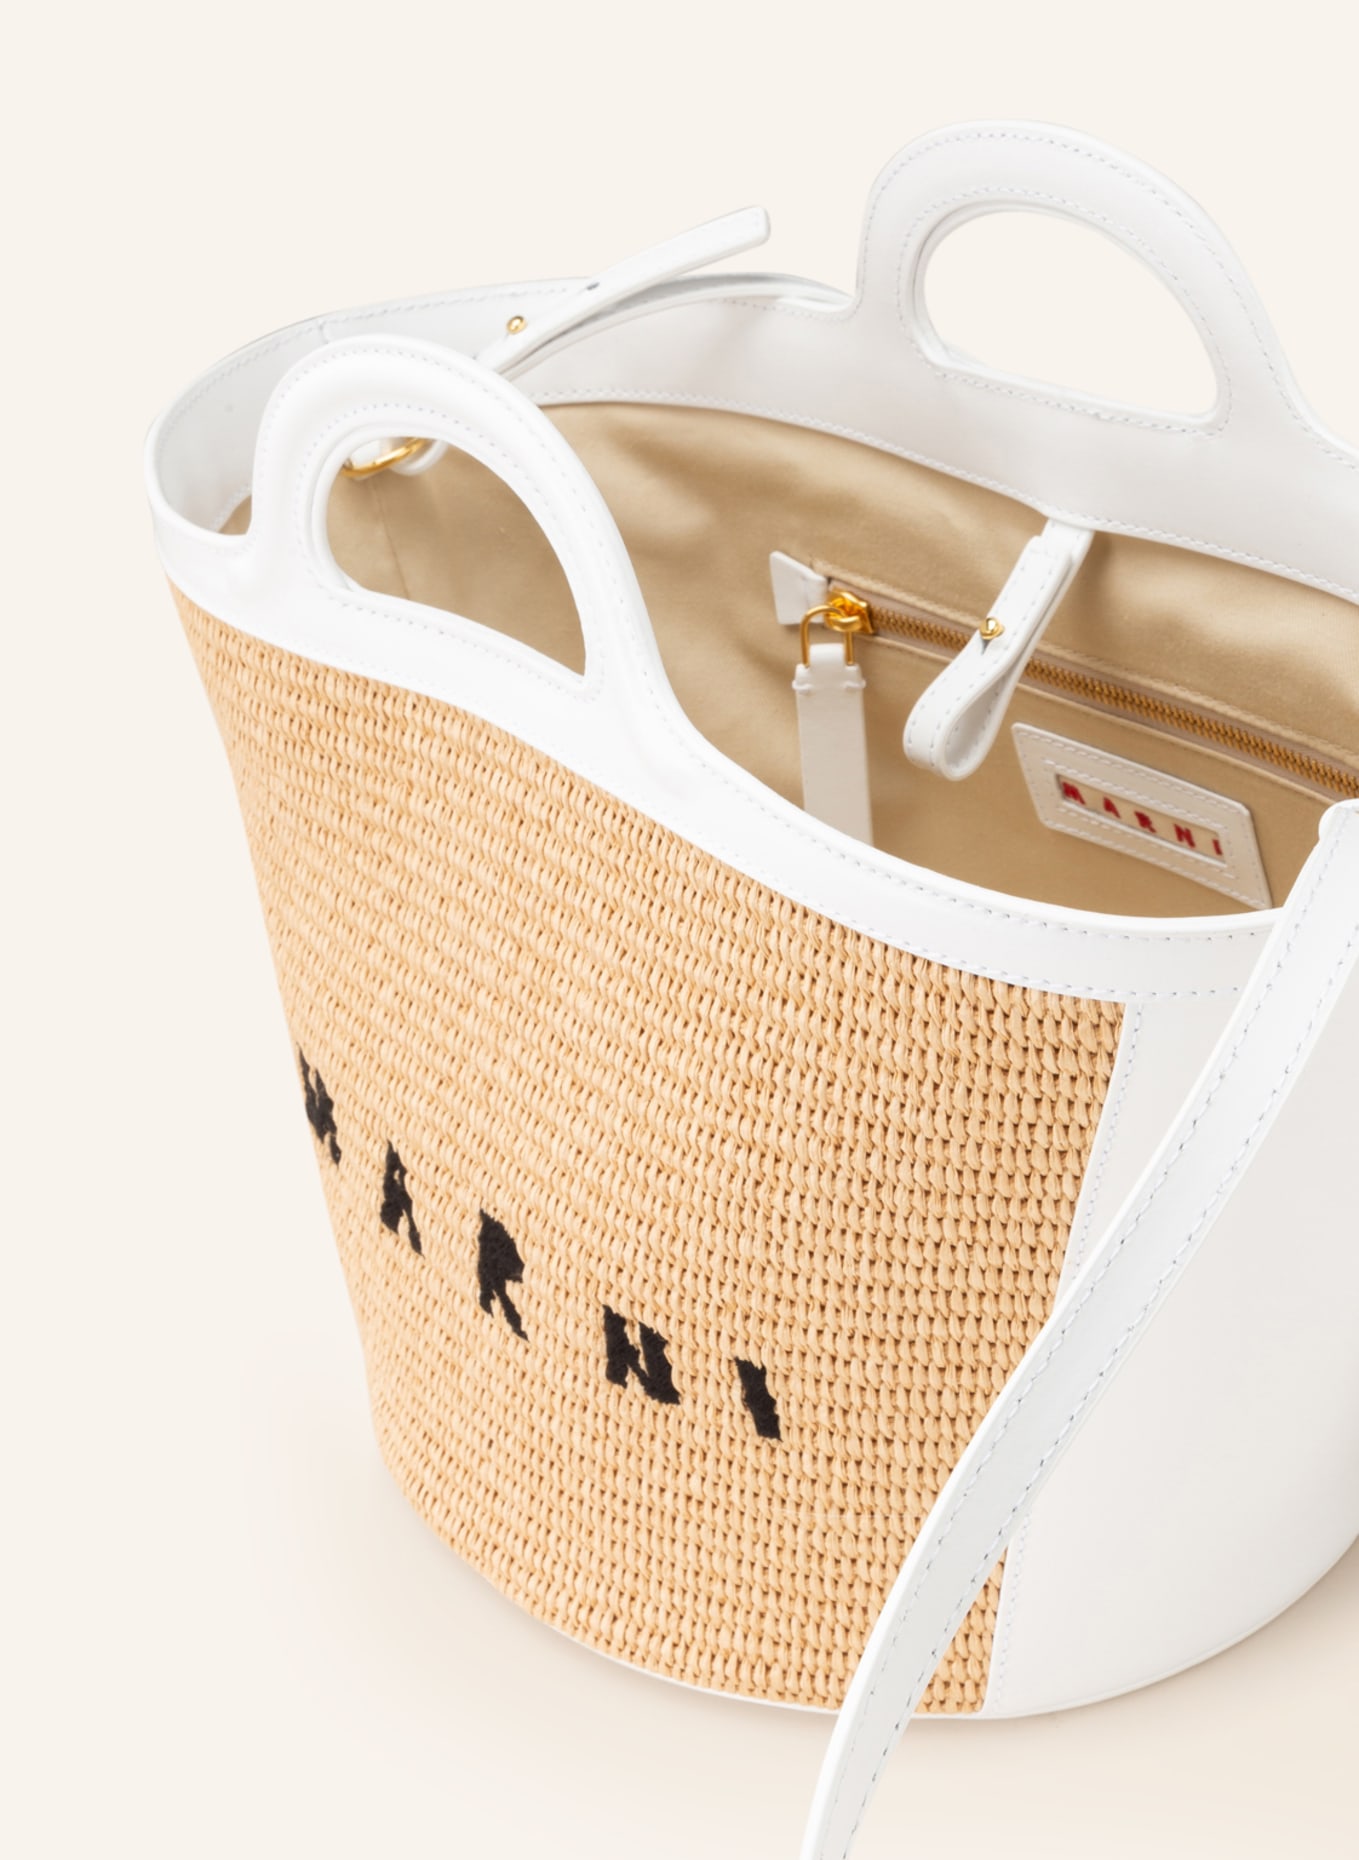 MARNI Handbag TROPICALIA SMALL in beige/ white